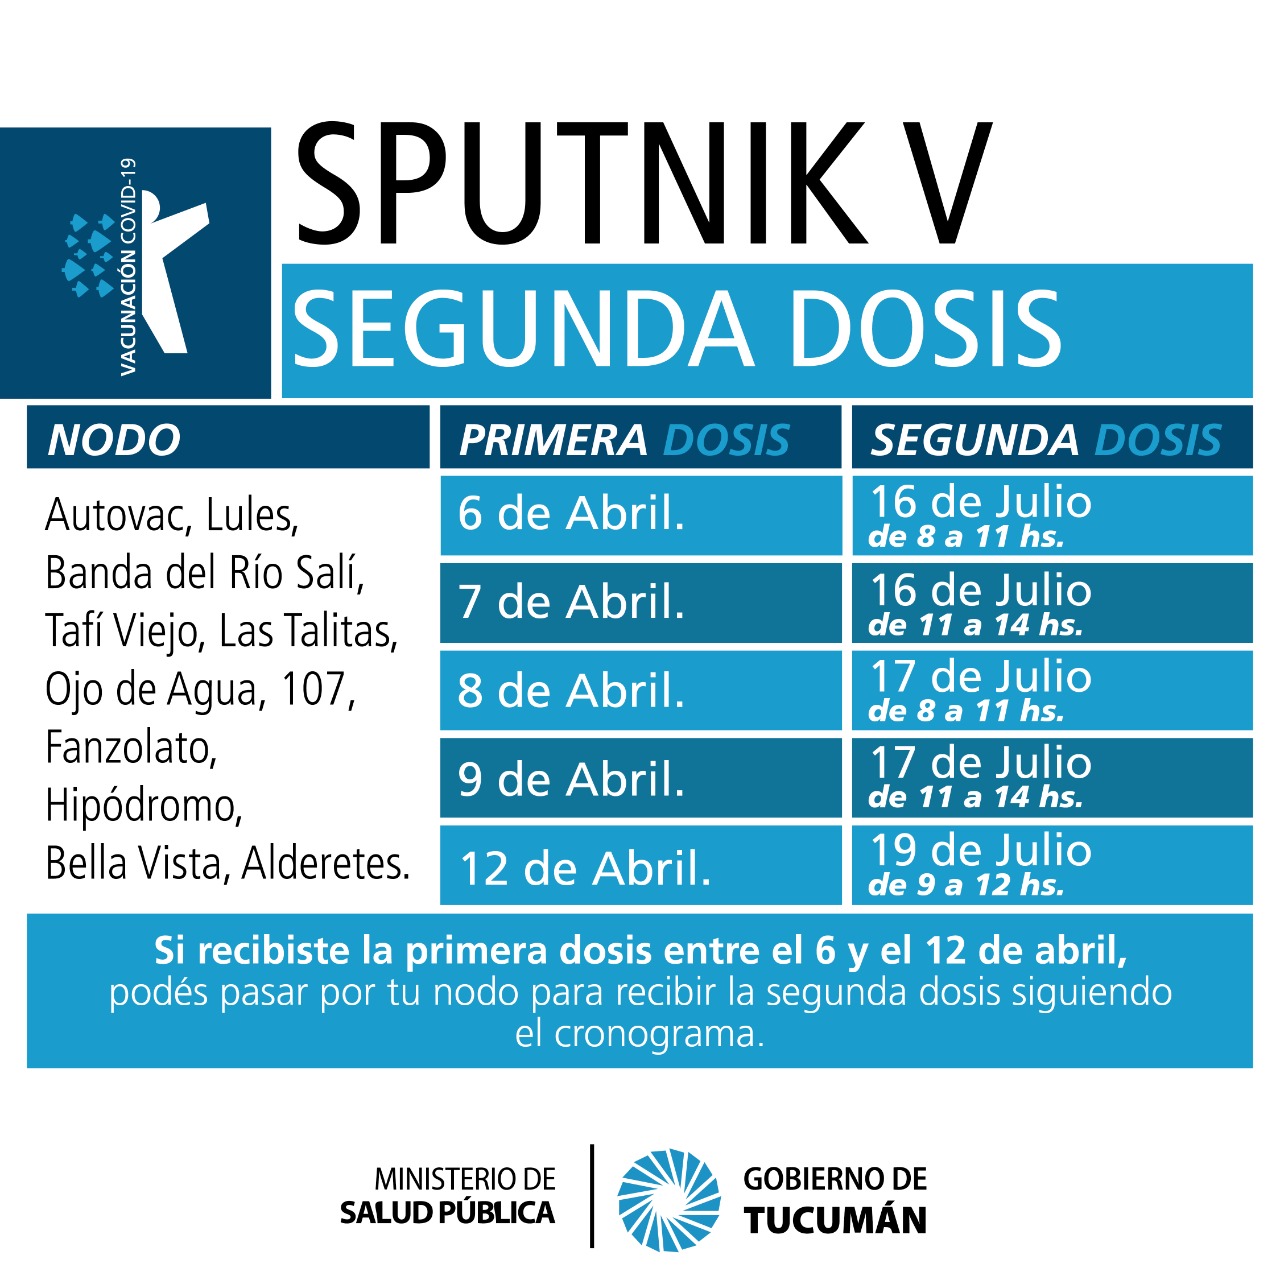 Vacunarán con segunda dosis de Sputnik V a personas que recibieron el  primer componente entre el 6 y 12 de abril – Ministerio de Salud Pública de  Tucumán